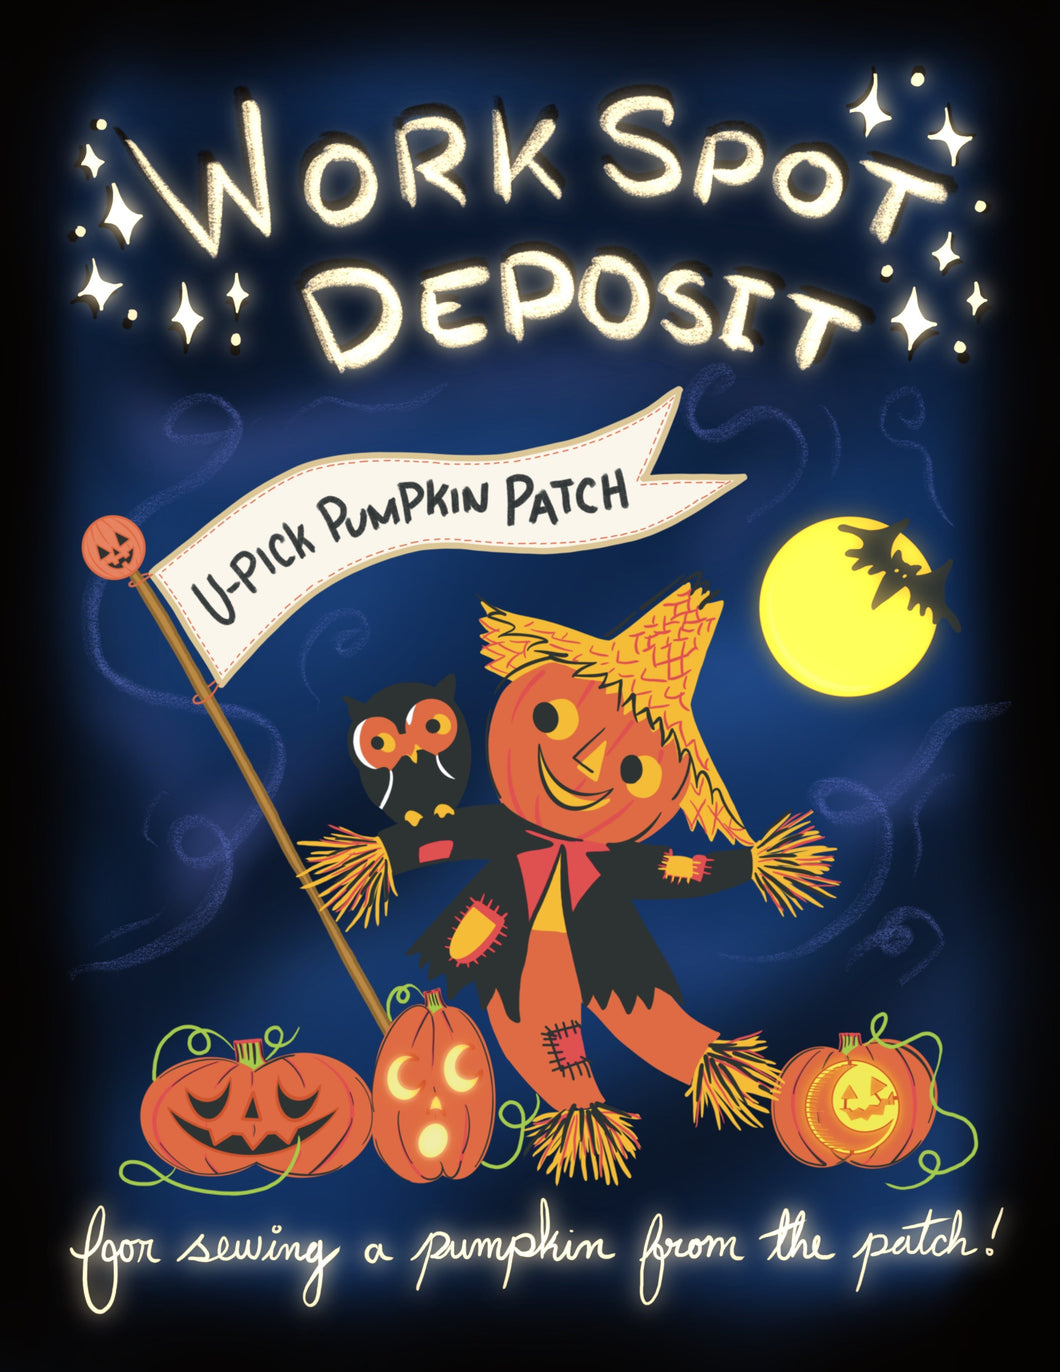 Handmade Purse Work Spot Deposit (Partial Payment): Spot 2